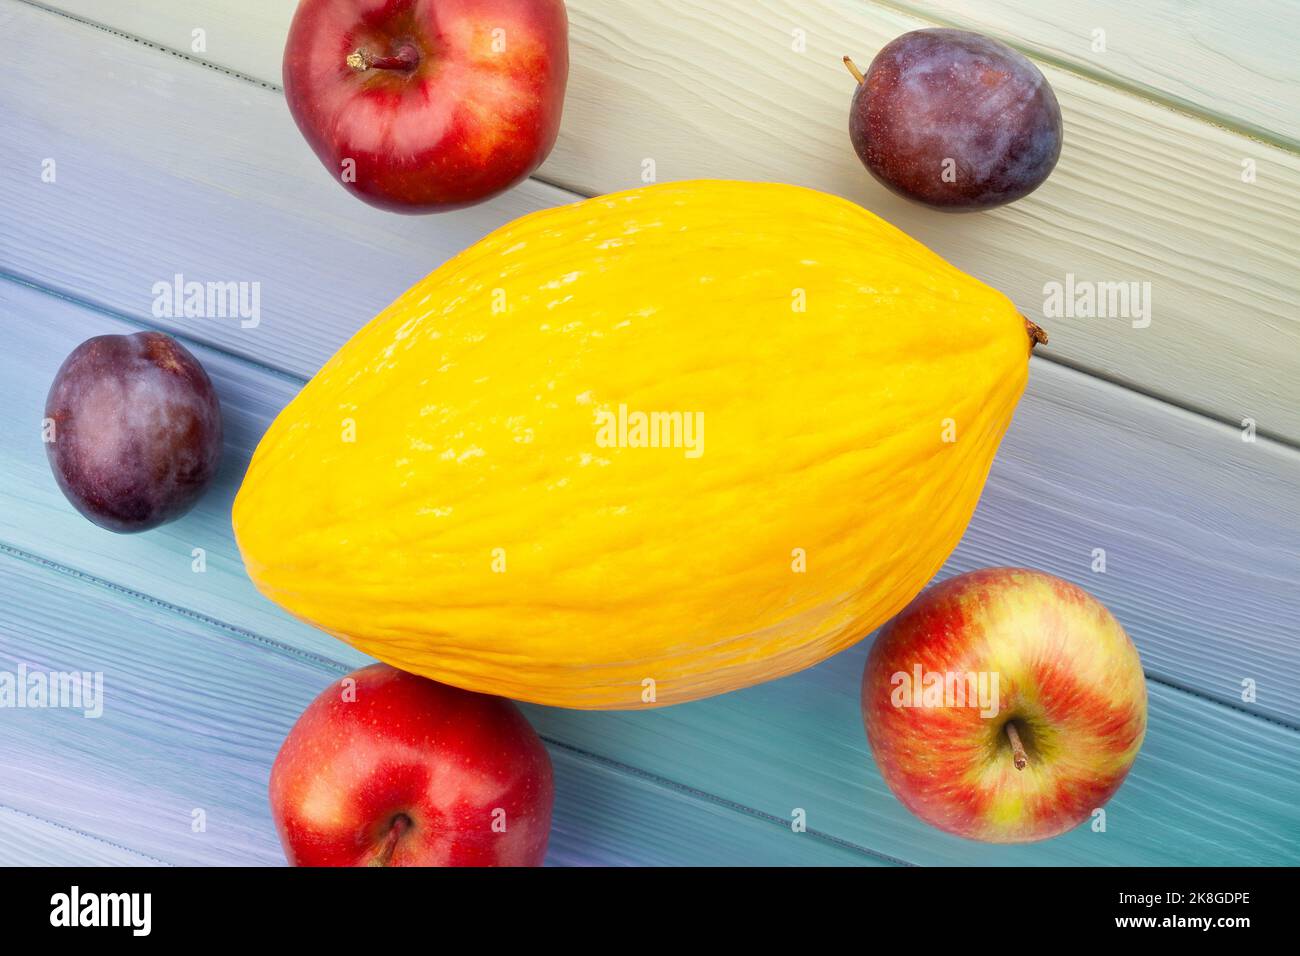 Gelbe Melone auf Holz Hintergrund Stockfoto